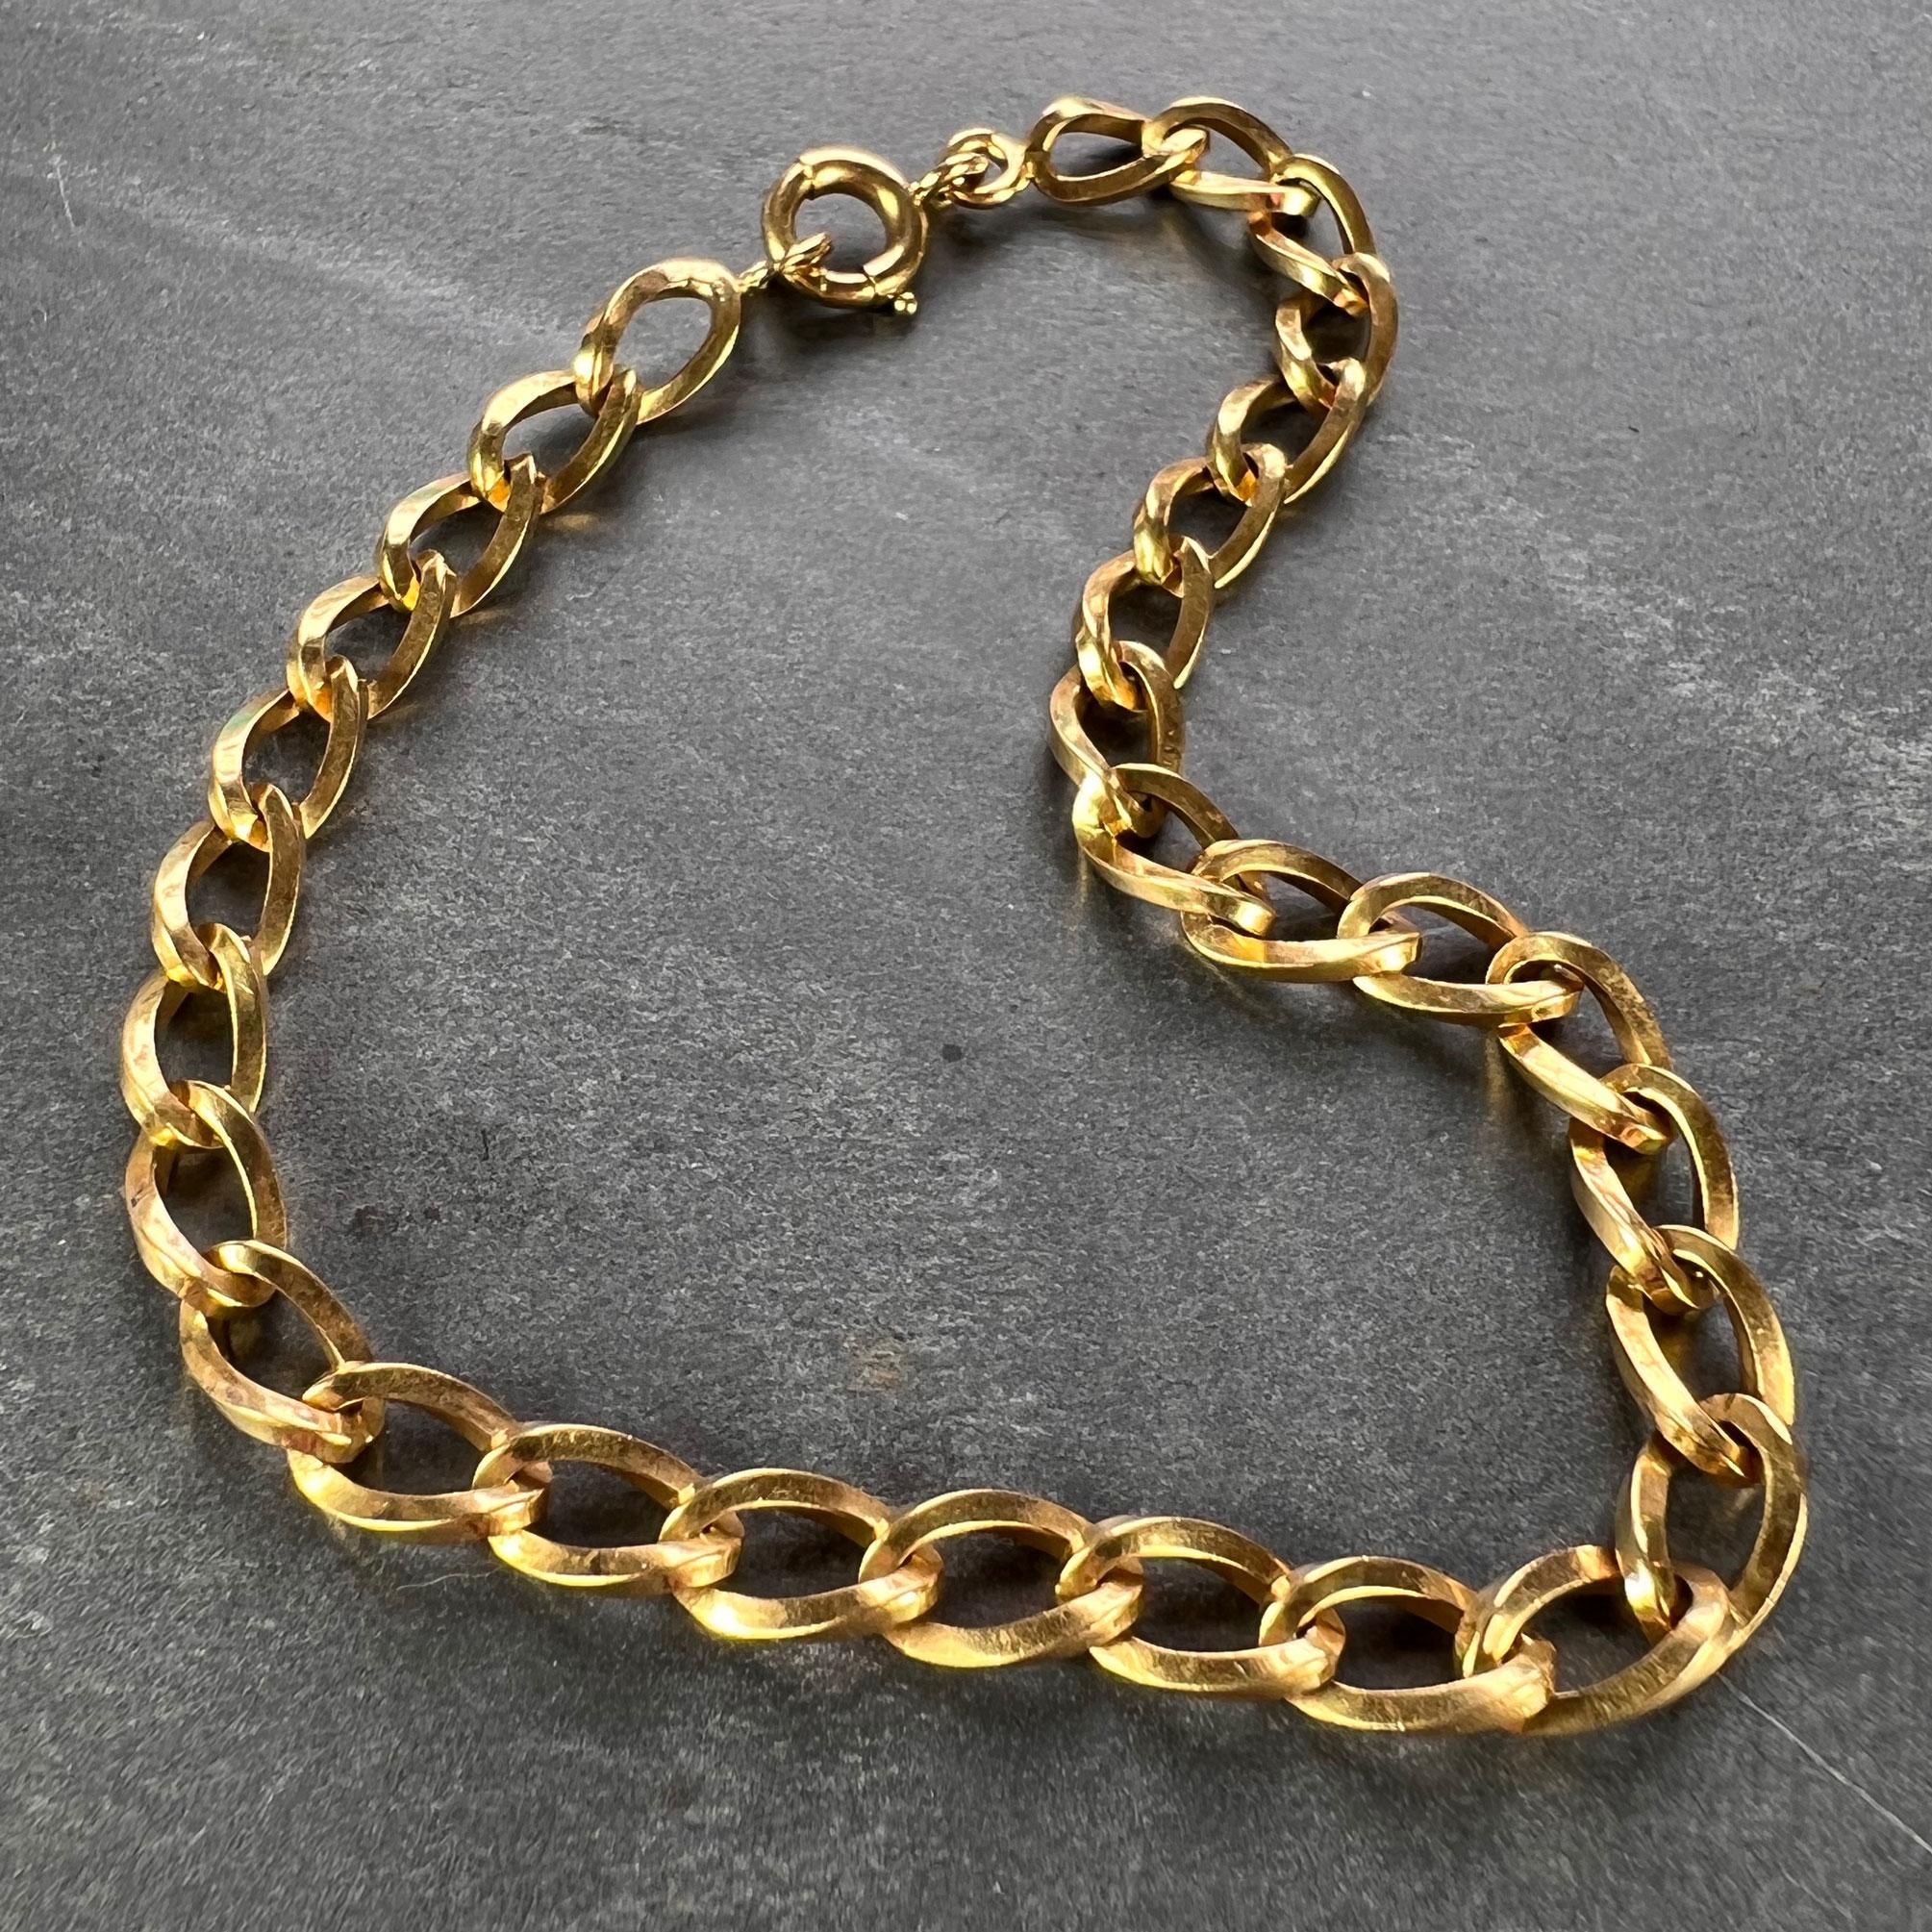 Bracelet en or jaune 18 carats à maillons torsadés carrés et fermoir à anneau à ressort. Estampillé de la marque d'importation française pour l'or 18 carats.

Dimensions : 19 x 0,5 cm (7,5